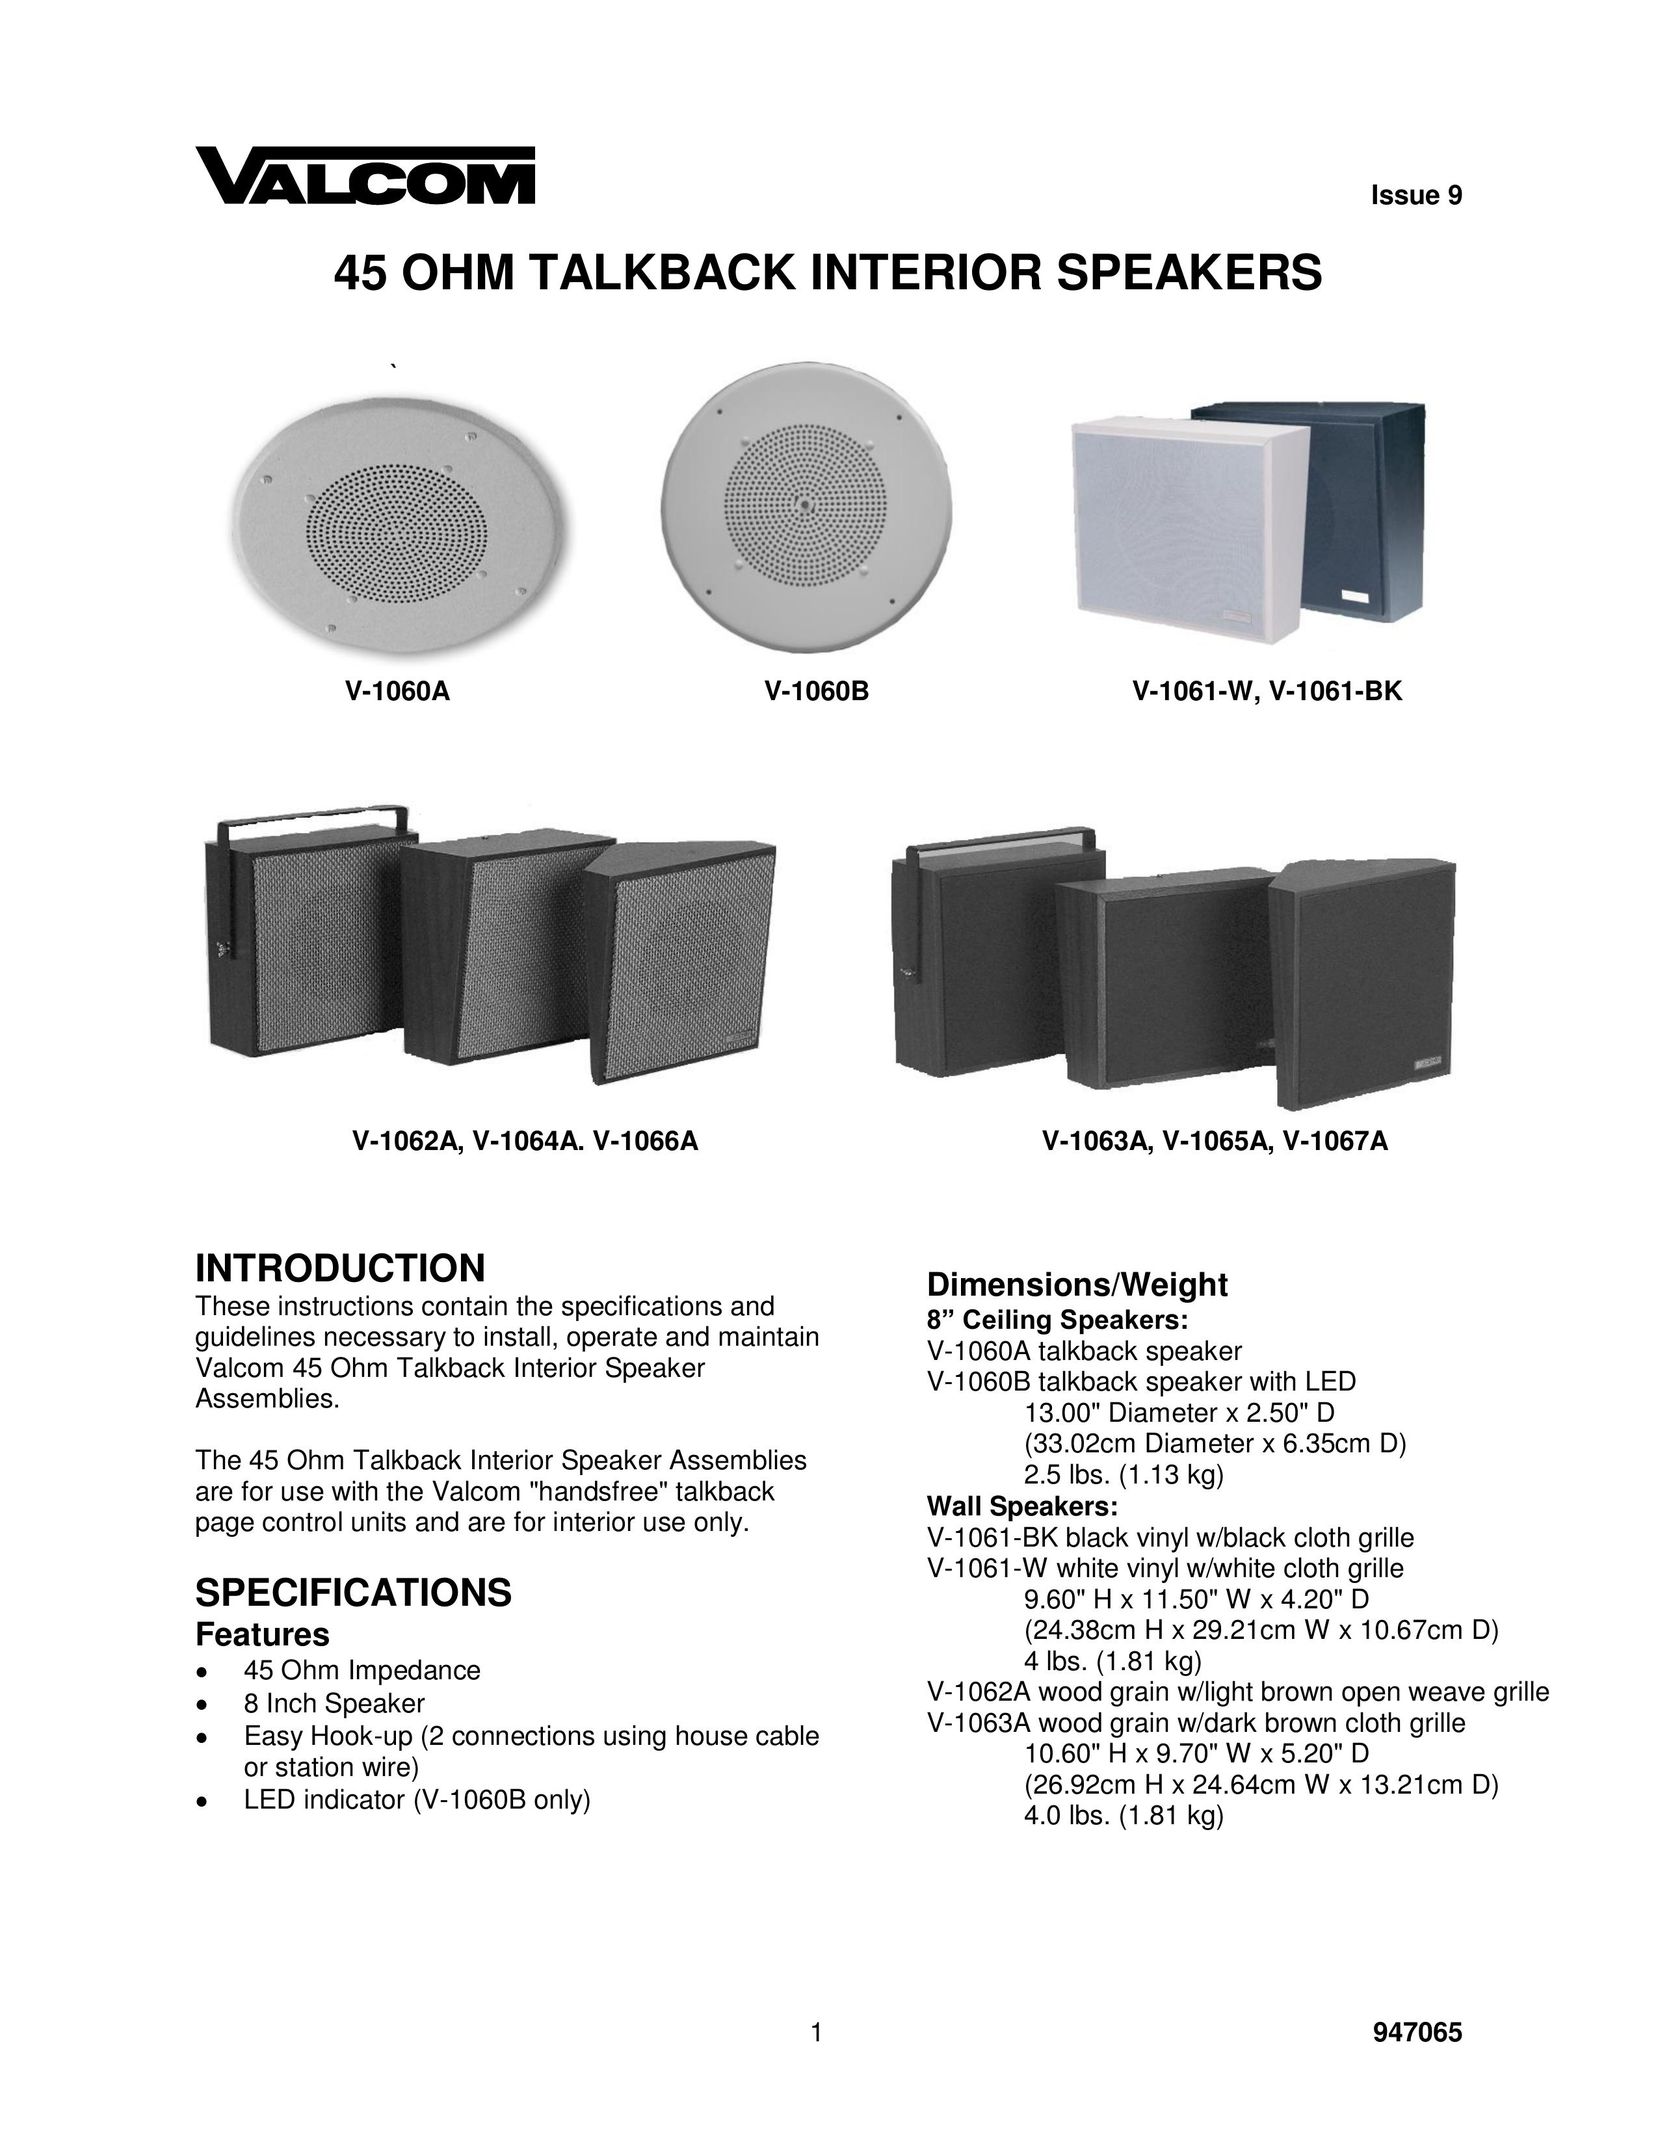 Valcom V-1066A Speaker User Manual